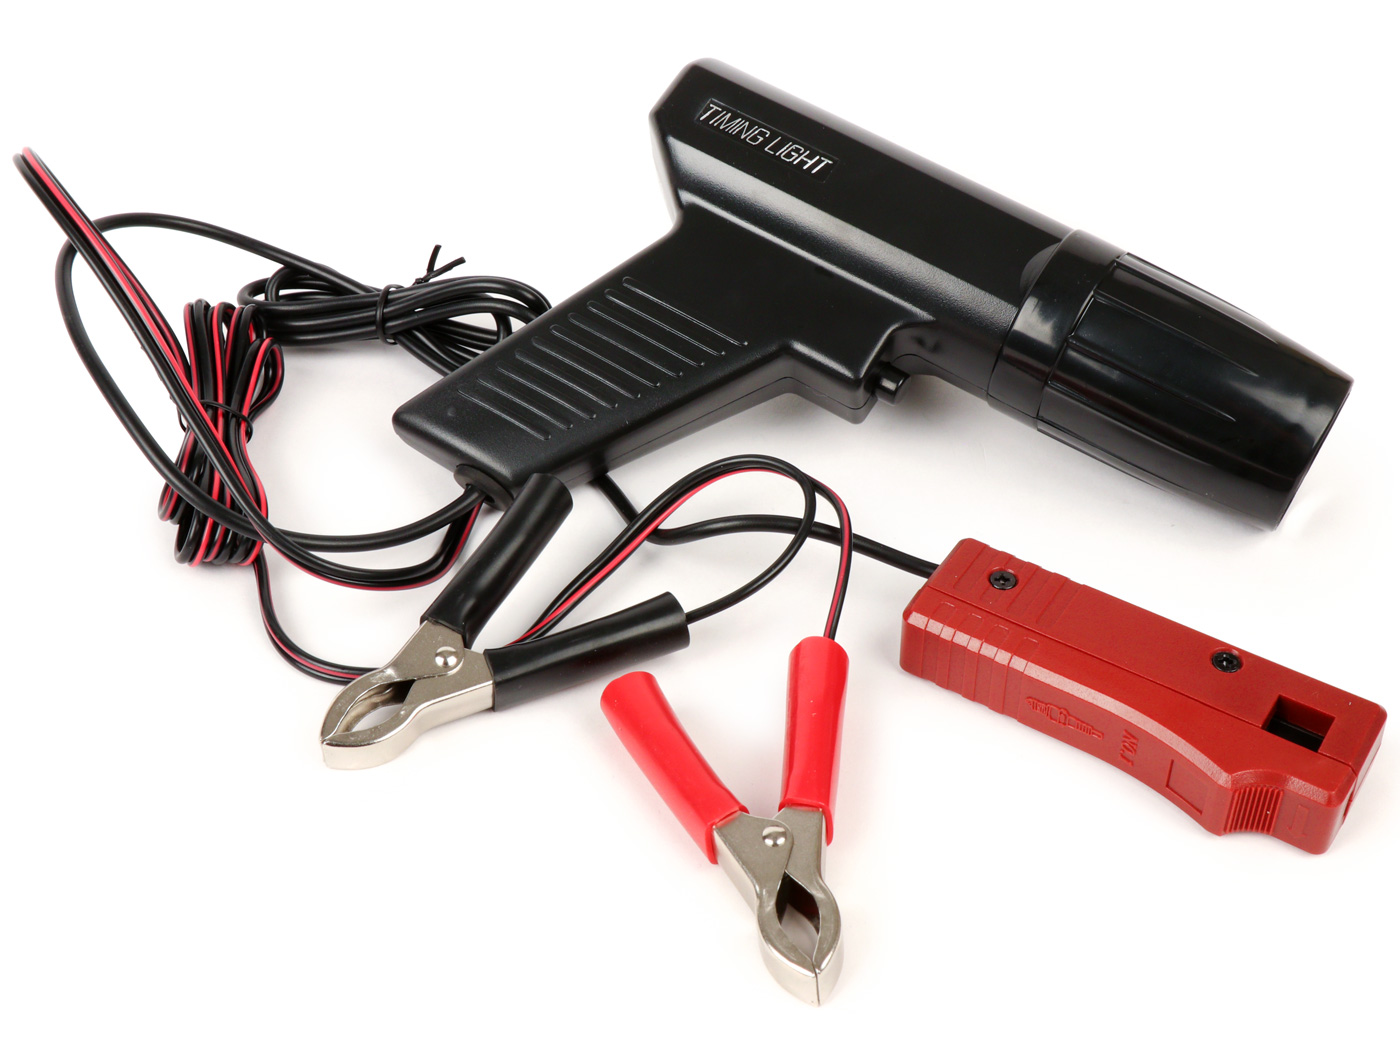 Impostazione dell'accensione della Vespa con una pistola flash / lampada  stroboscopica - Scooter Center Scootersops blog